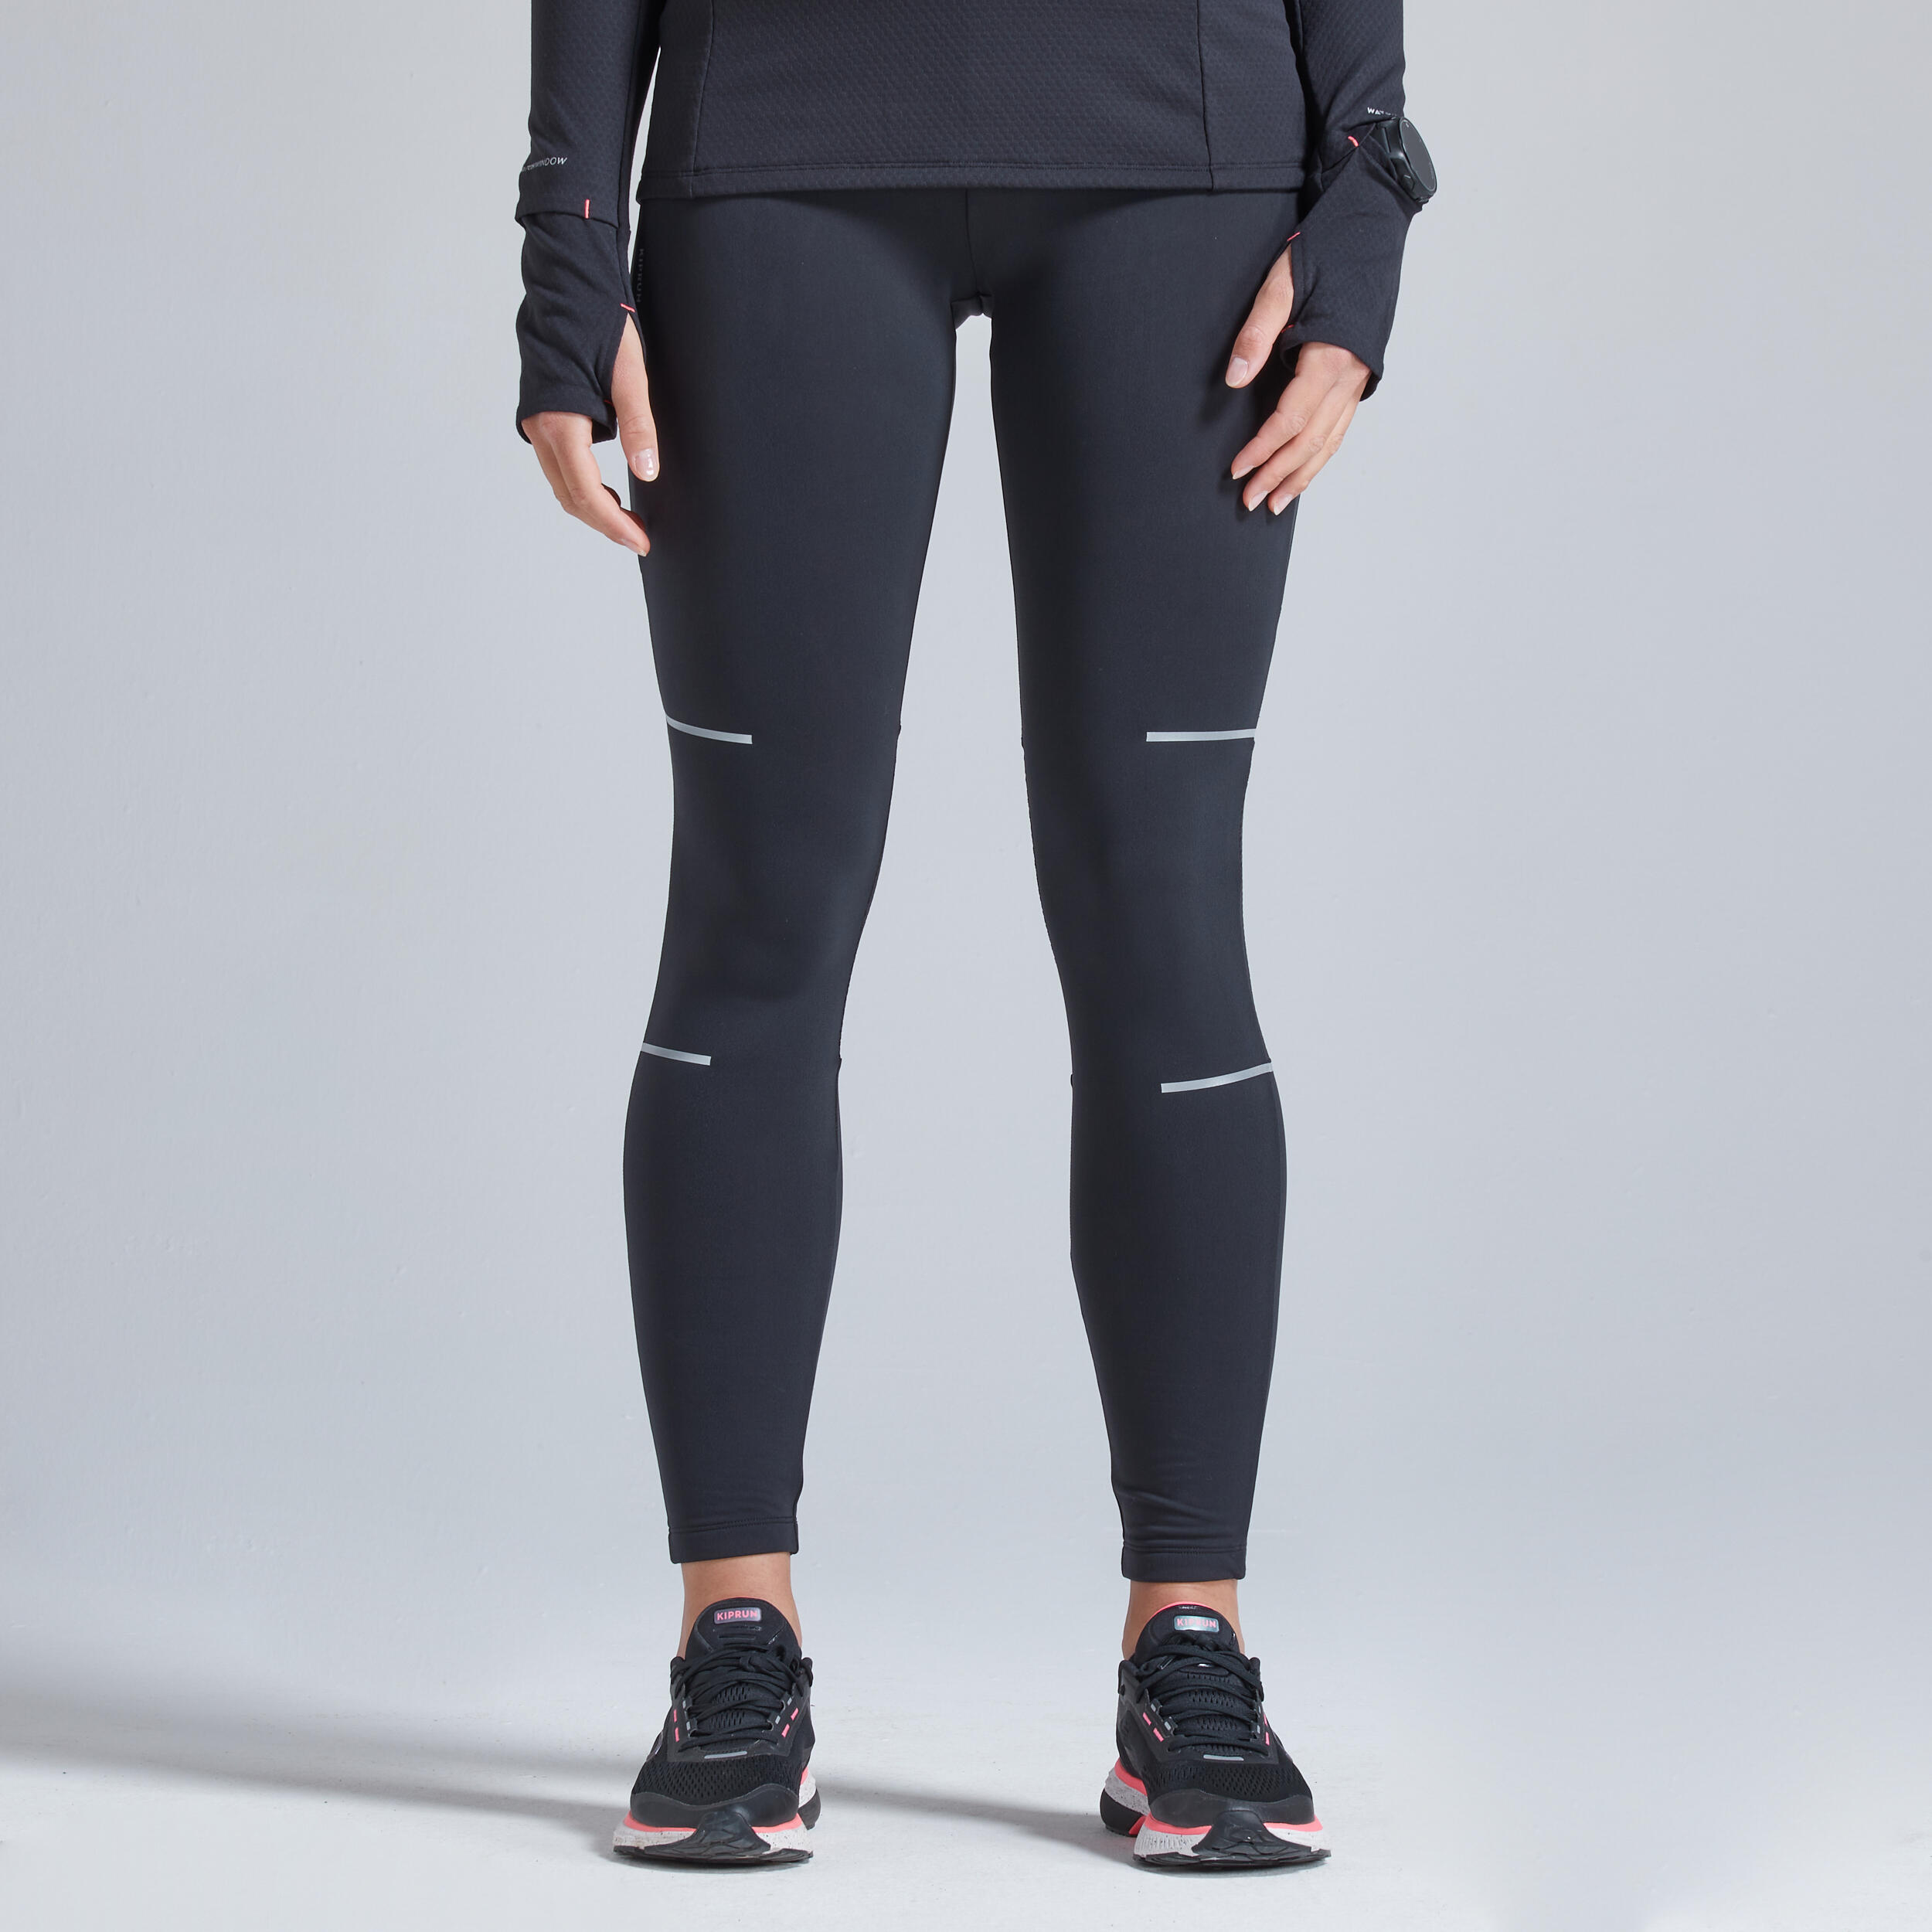 RUNLDN Running Capri Leggings (black) – Vibragear Activewear